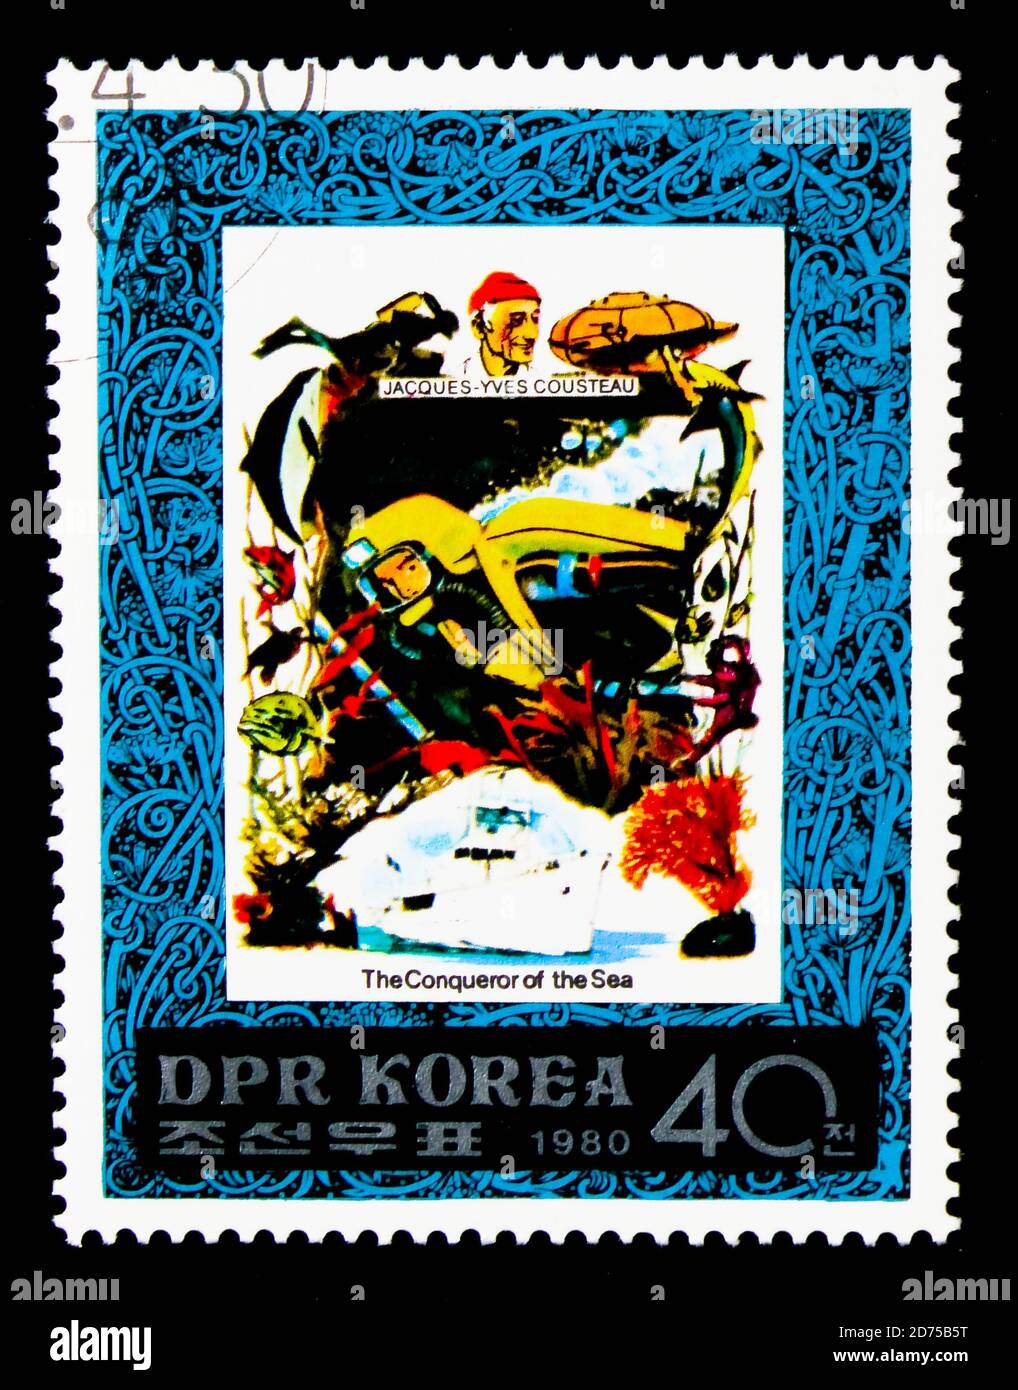 MOSCOU, RUSSIE - 25 NOVEMBRE 2017 : un timbre imprimé en république populaire démocratique de Corée montre le portrait de Jacques-Yves Cousteau, conquérants de TH Banque D'Images